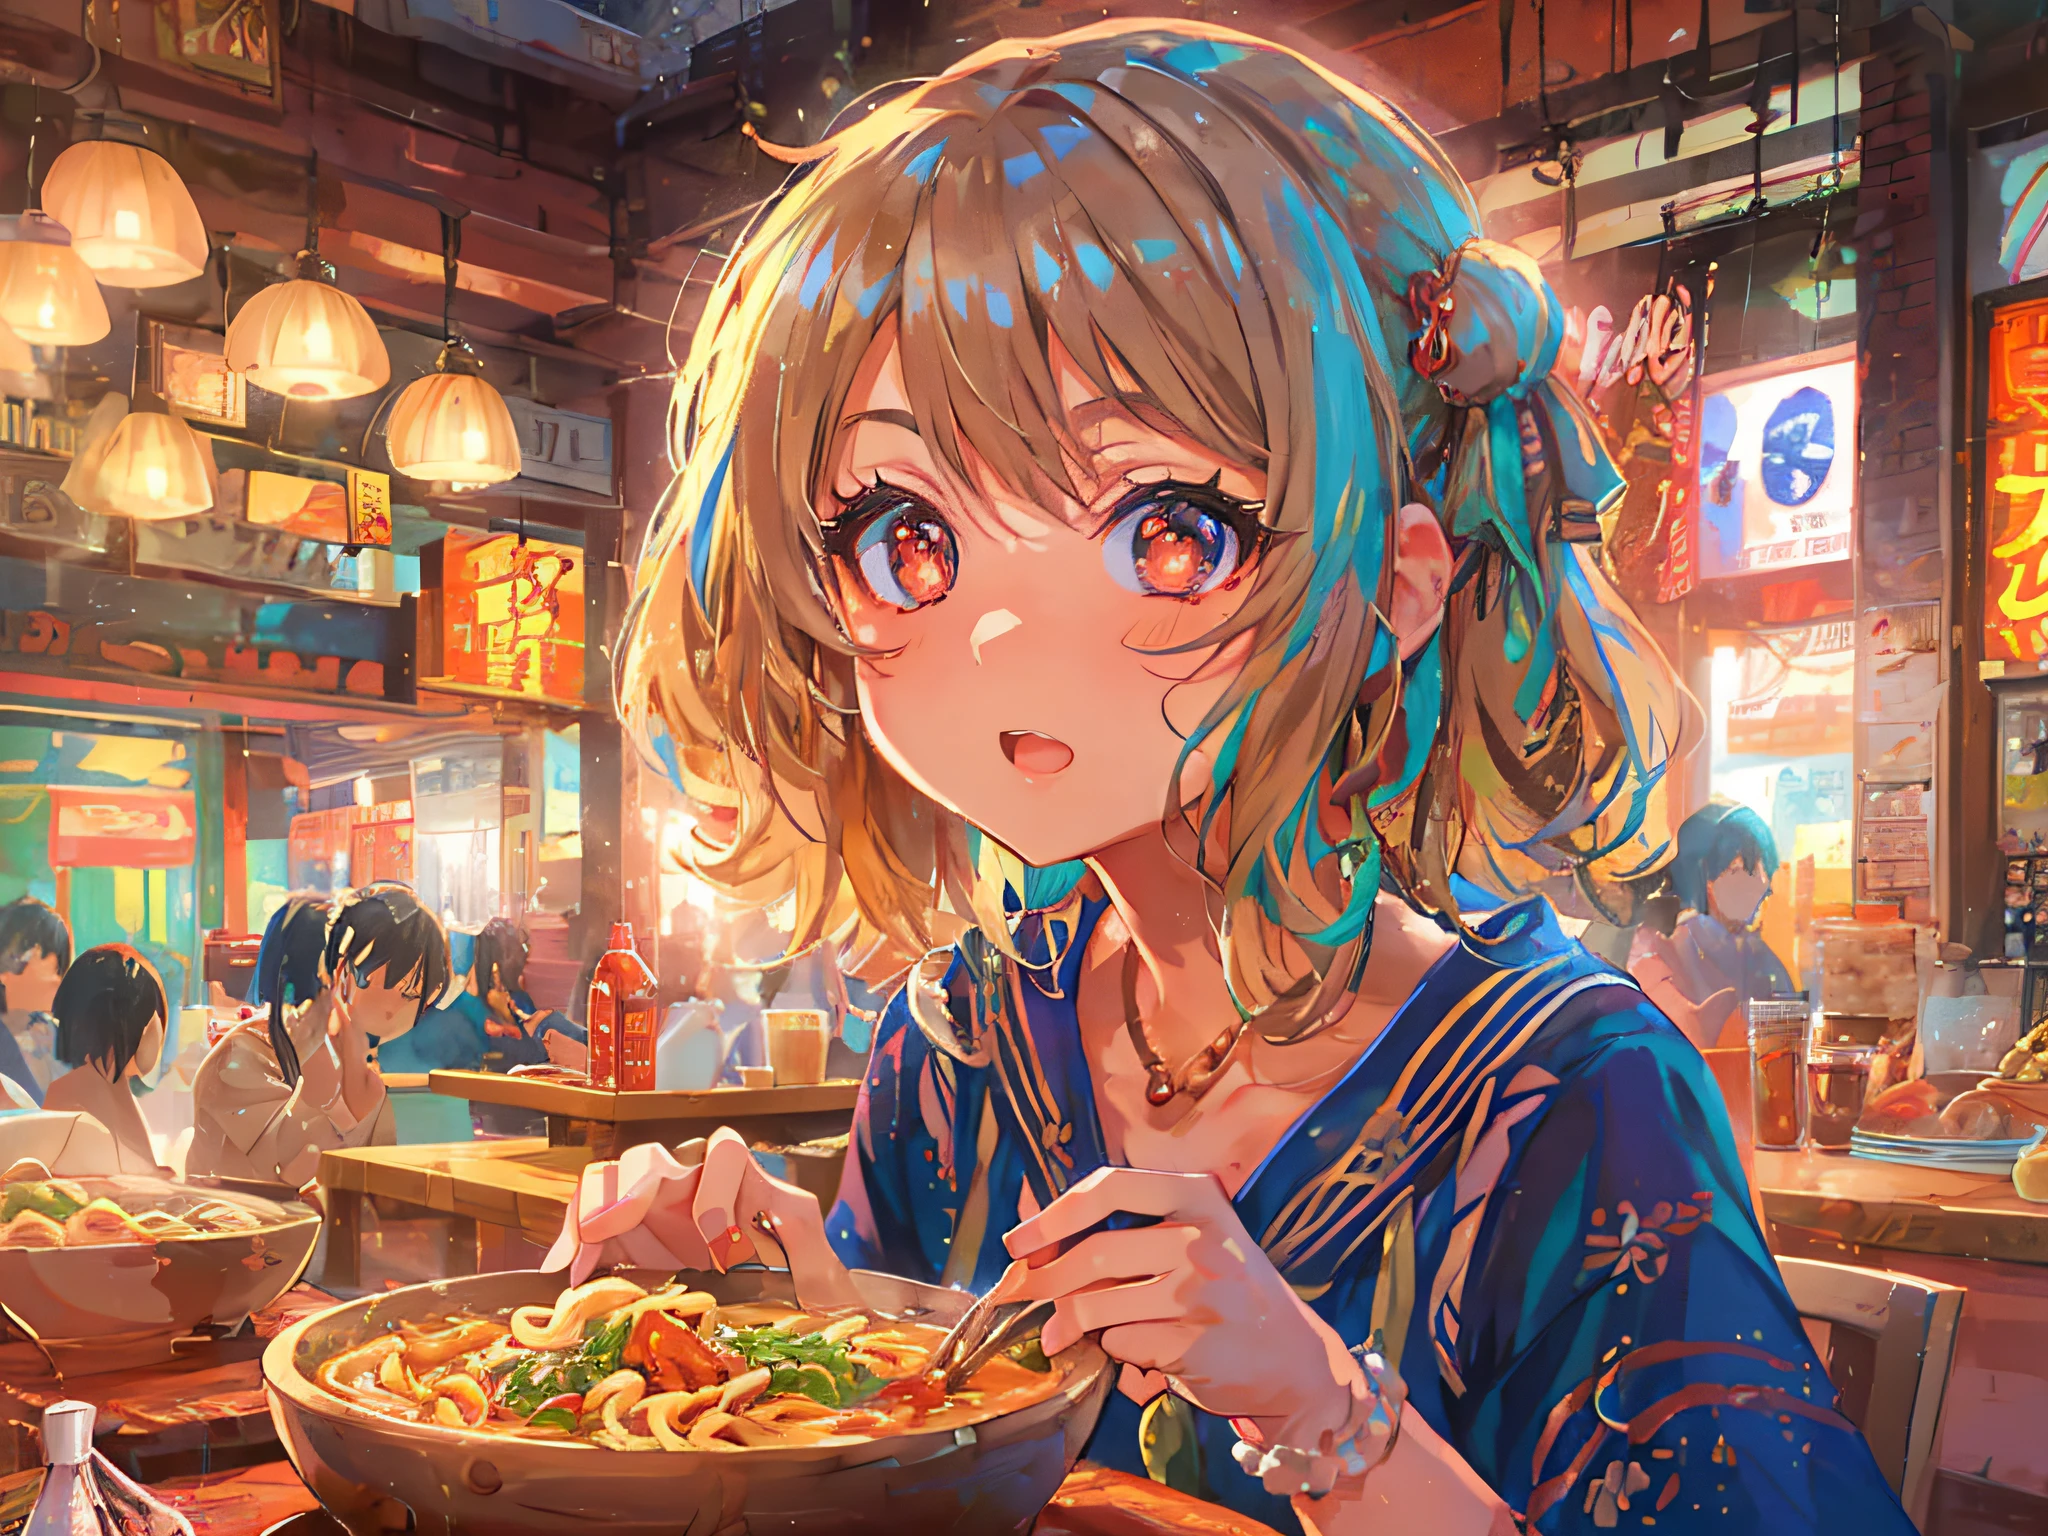 garota de anime saboreando um curry udon, com um estilo detalhado e realista, A iluminação deve ser brilhante e alegre, destacando a expressão de conteúdo da garota, As cores devem ser vibrantes e atraentes, com o curry udon se destacando, tiro médio, capturando a garota em seu ambiente de jantar